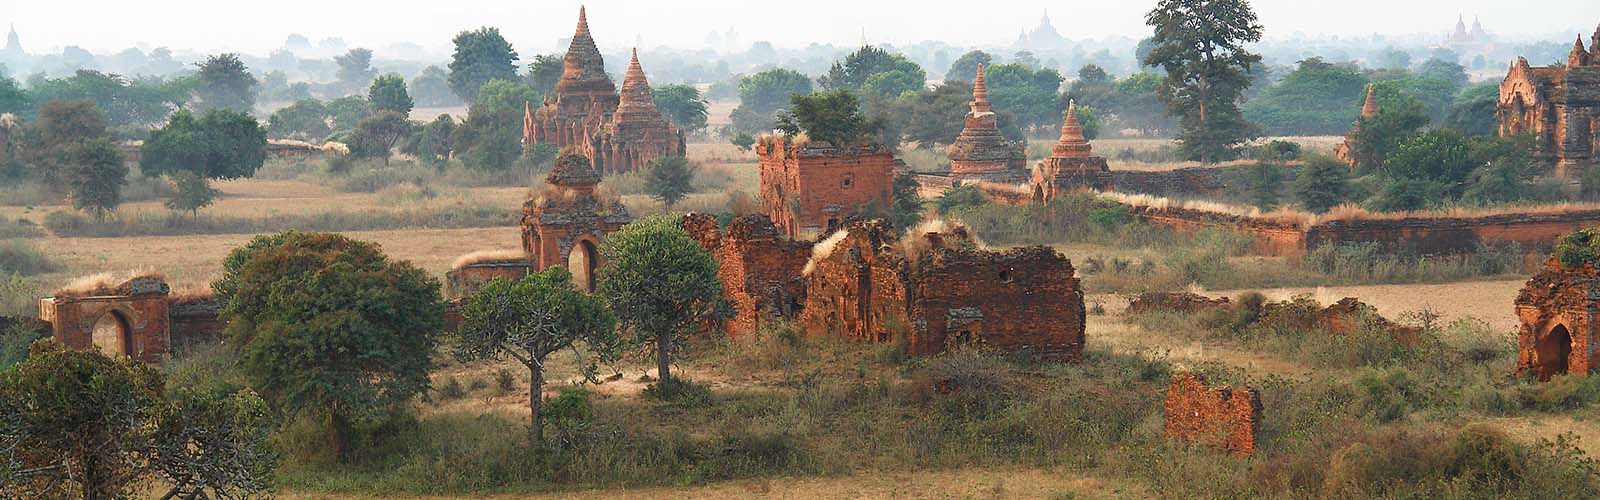 La culture en Birmanie, Guide culturel Birmanie